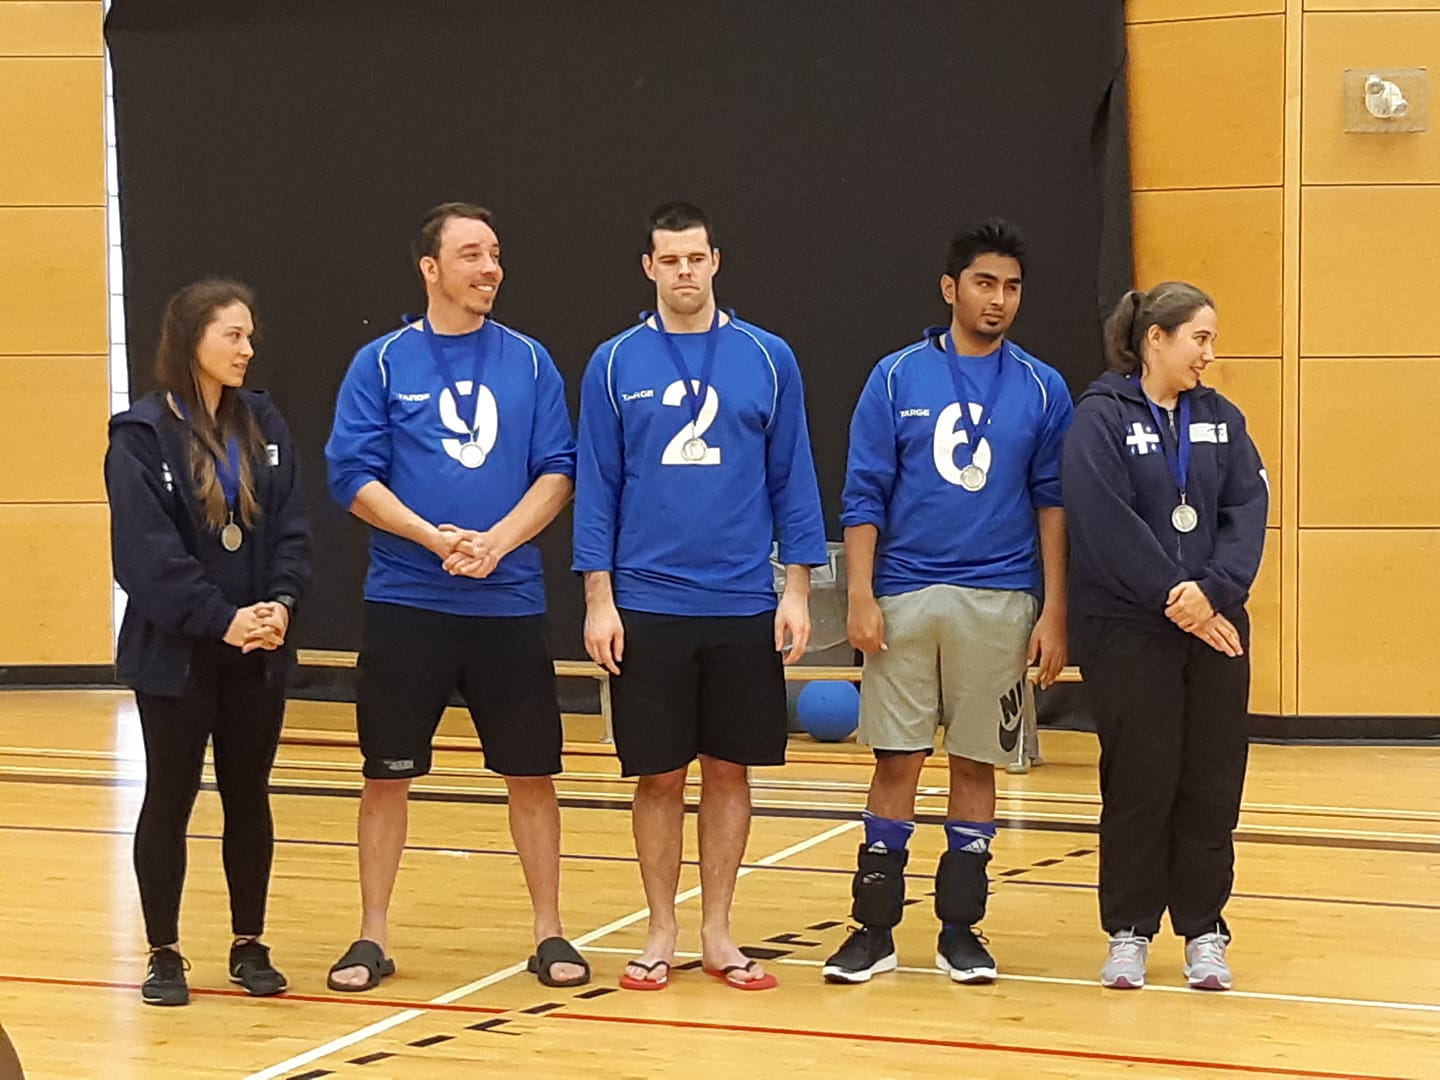 Silver Medal winning team, Québec!